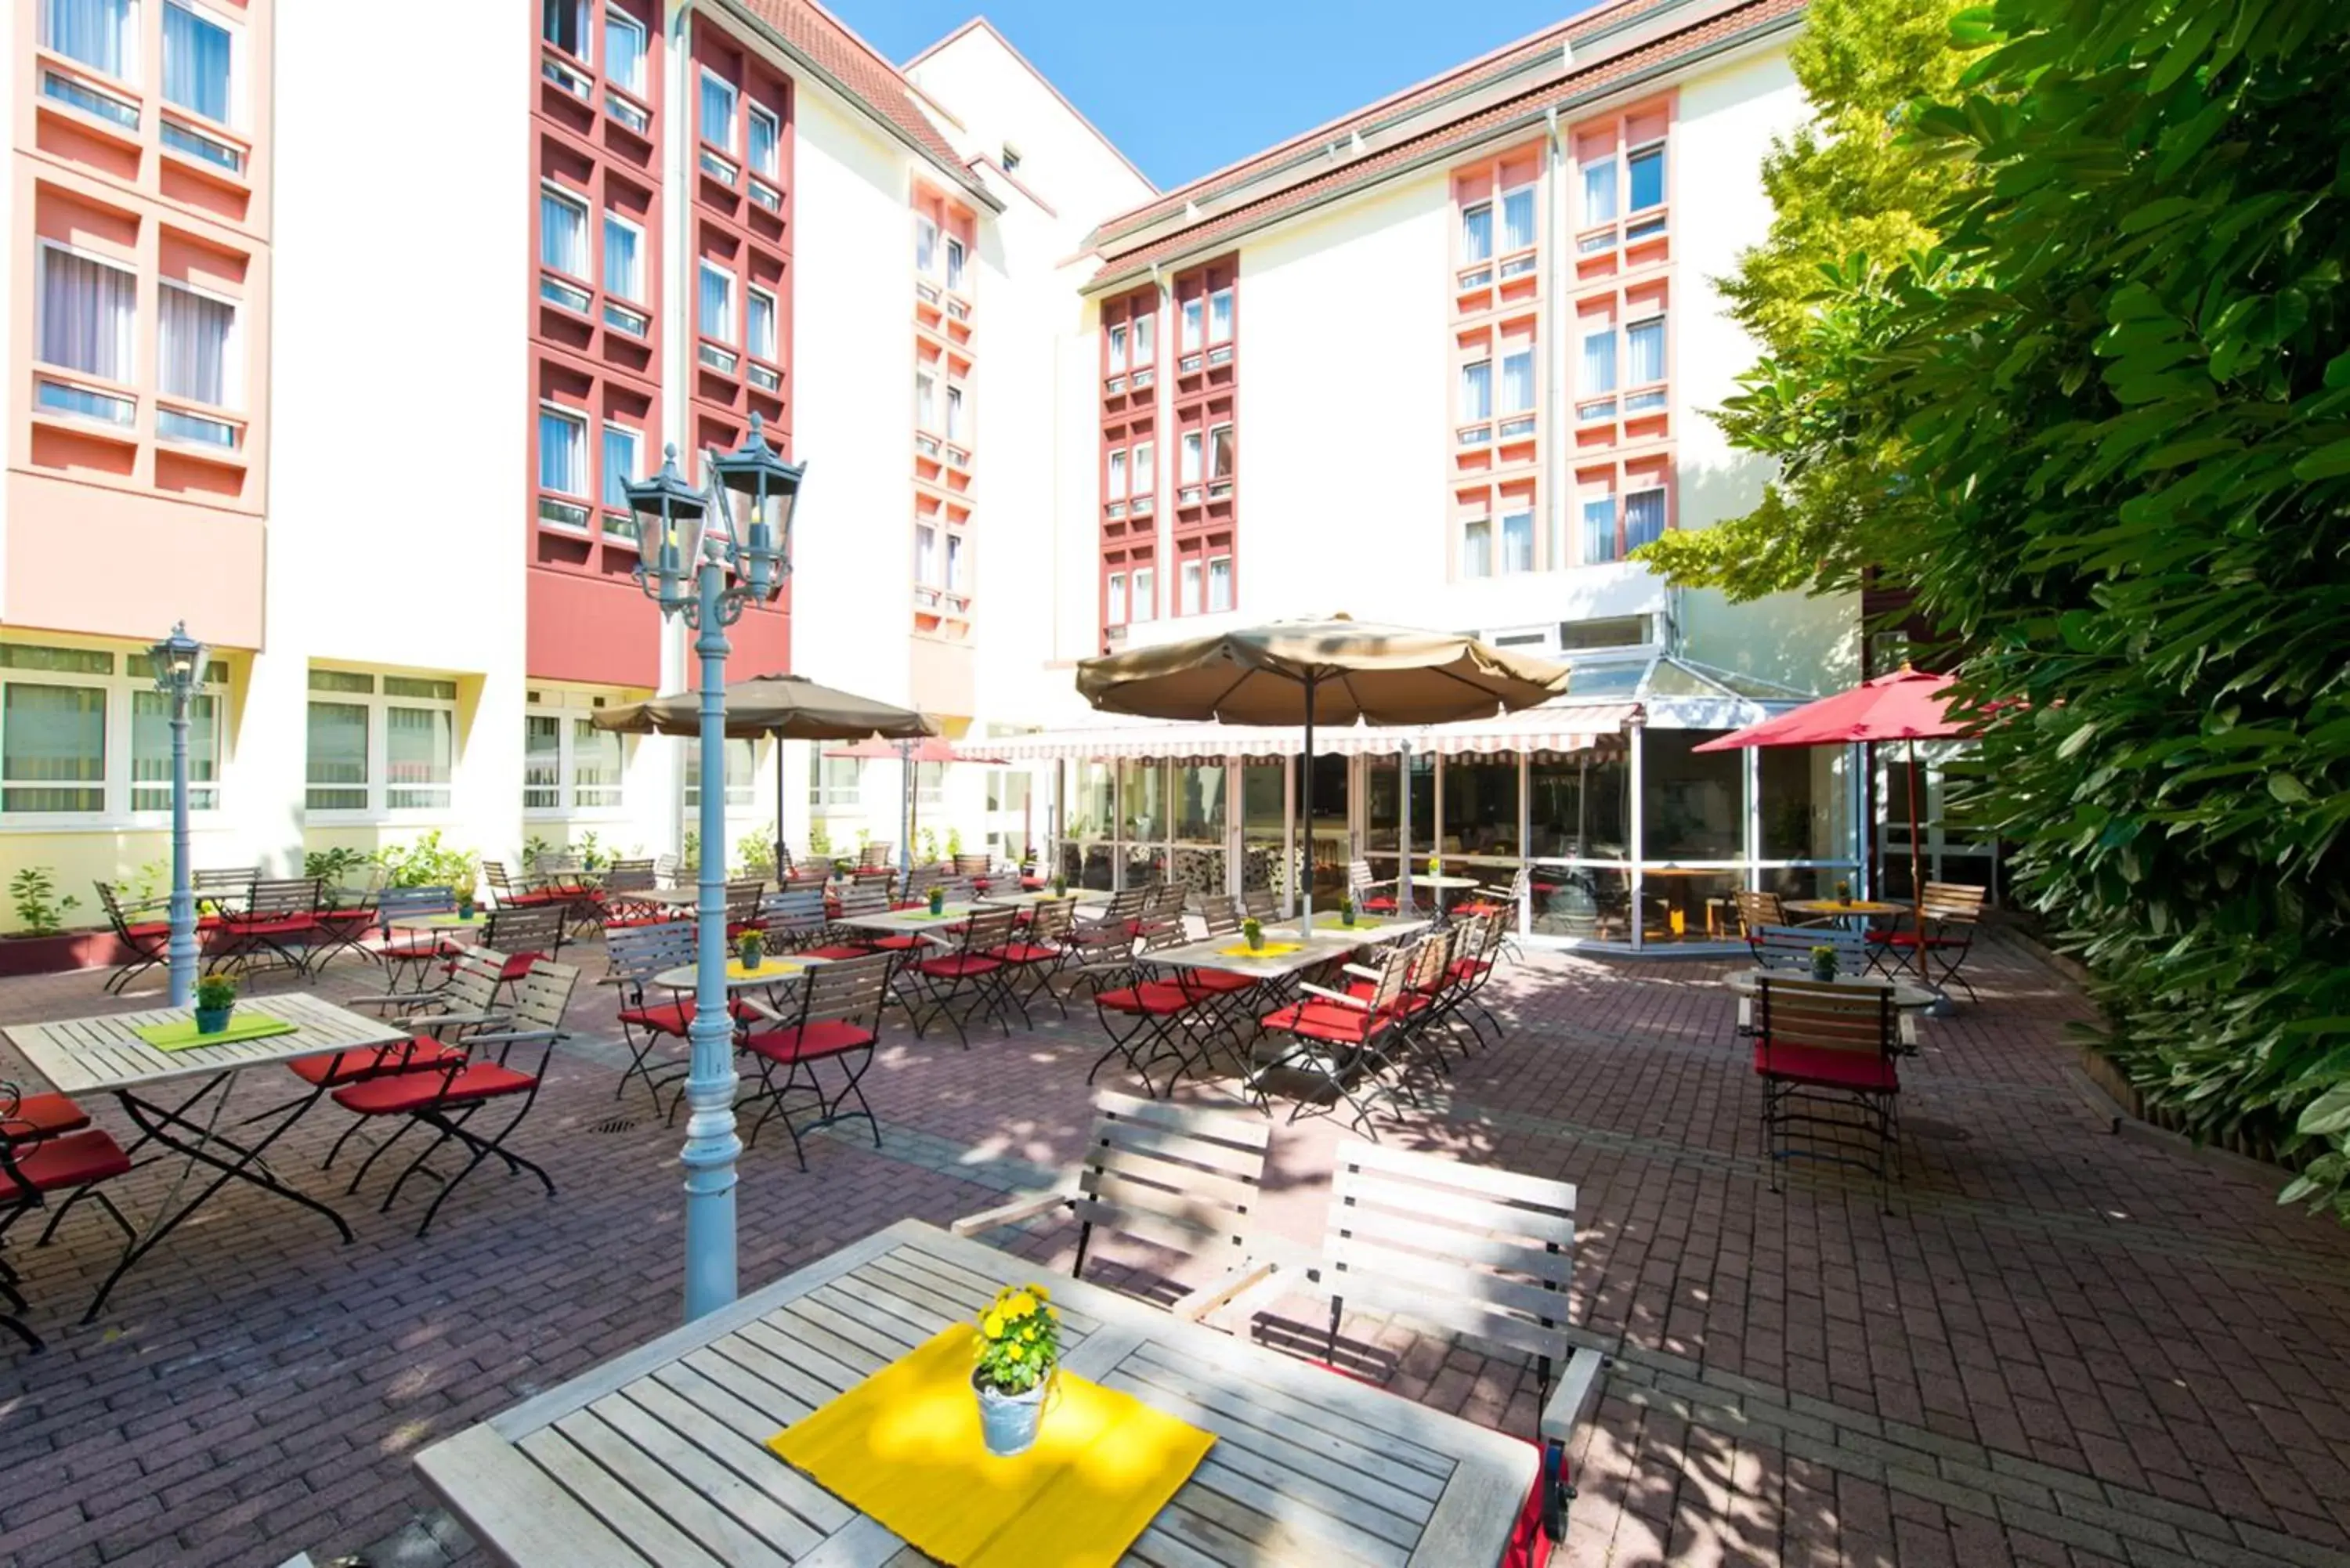 Balcony/Terrace, Restaurant/Places to Eat in ACHAT Hotel Neustadt an der Weinstraße